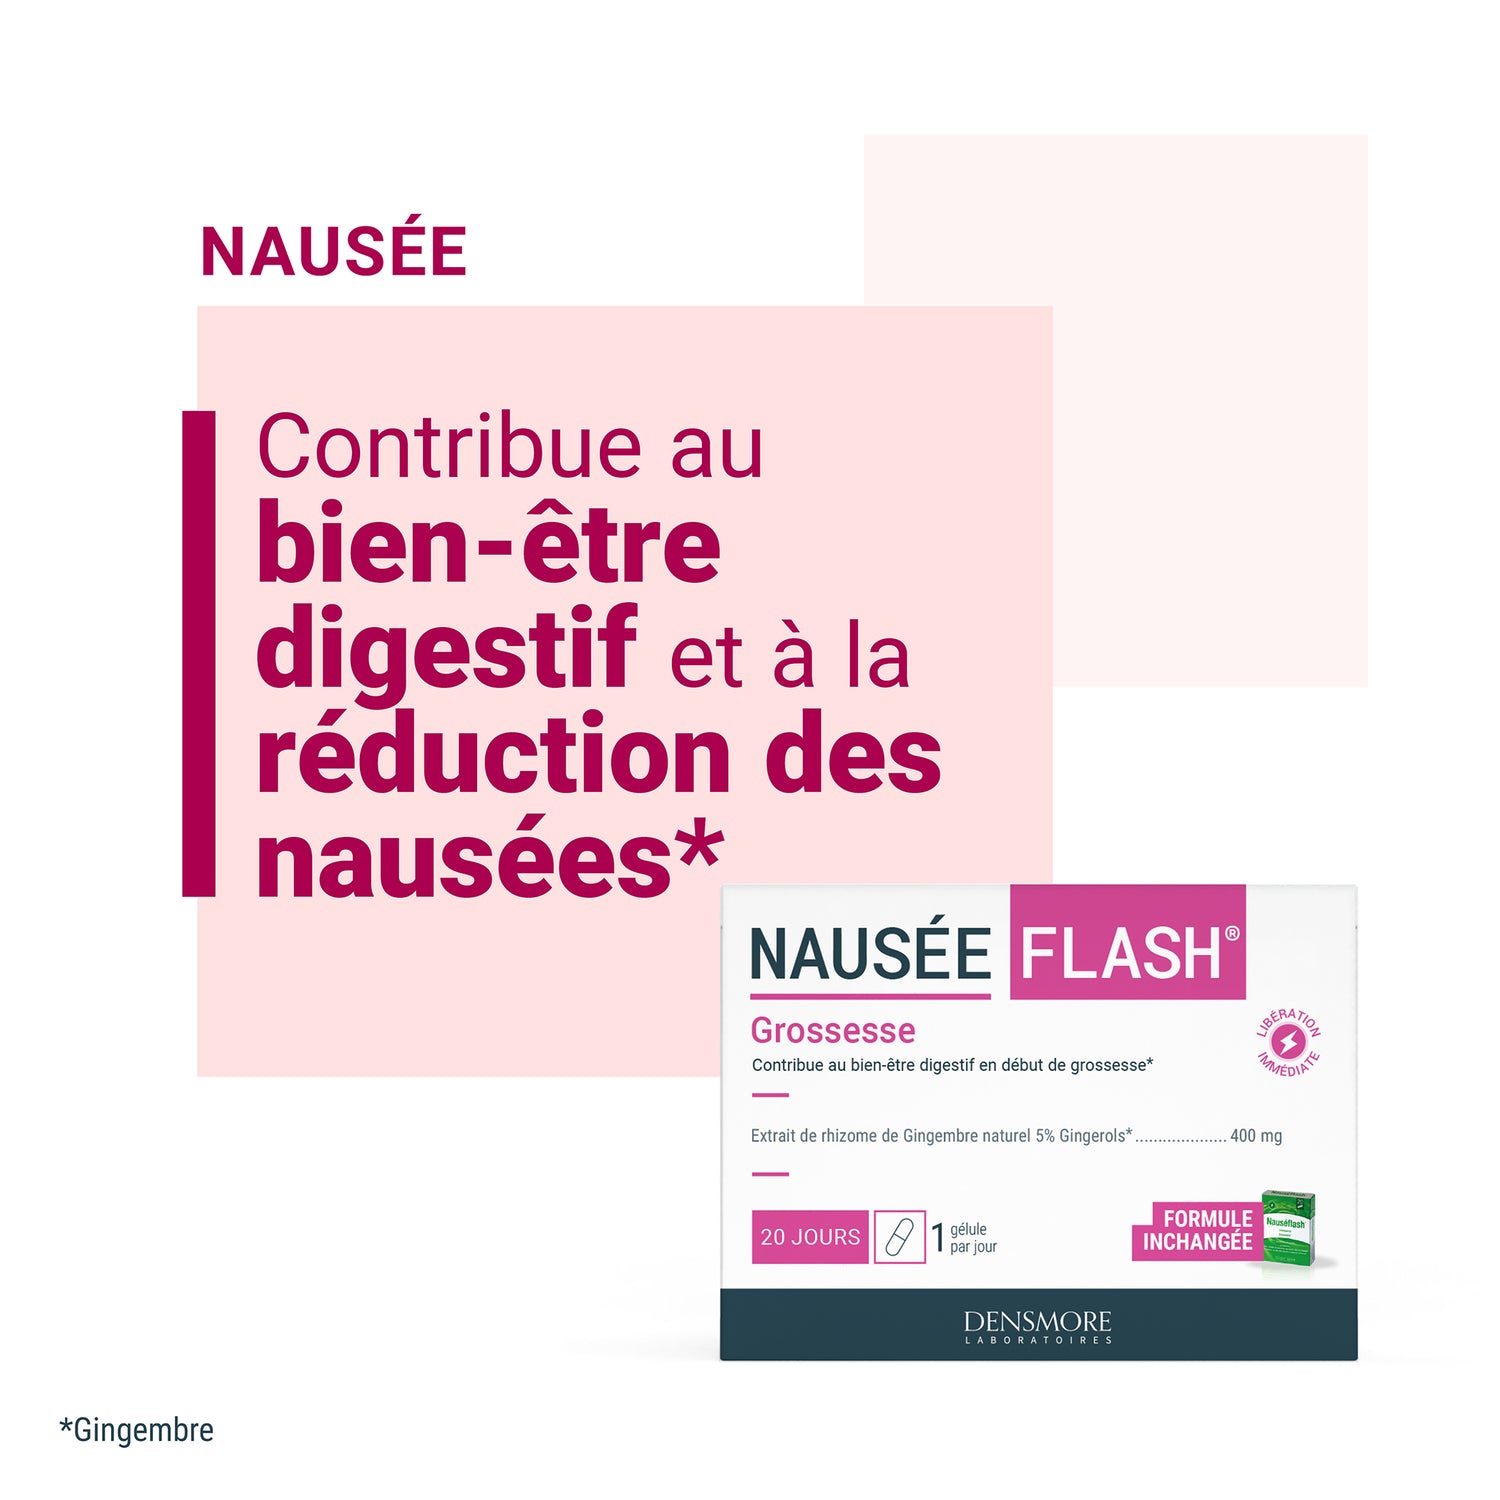 Nauseaflash®